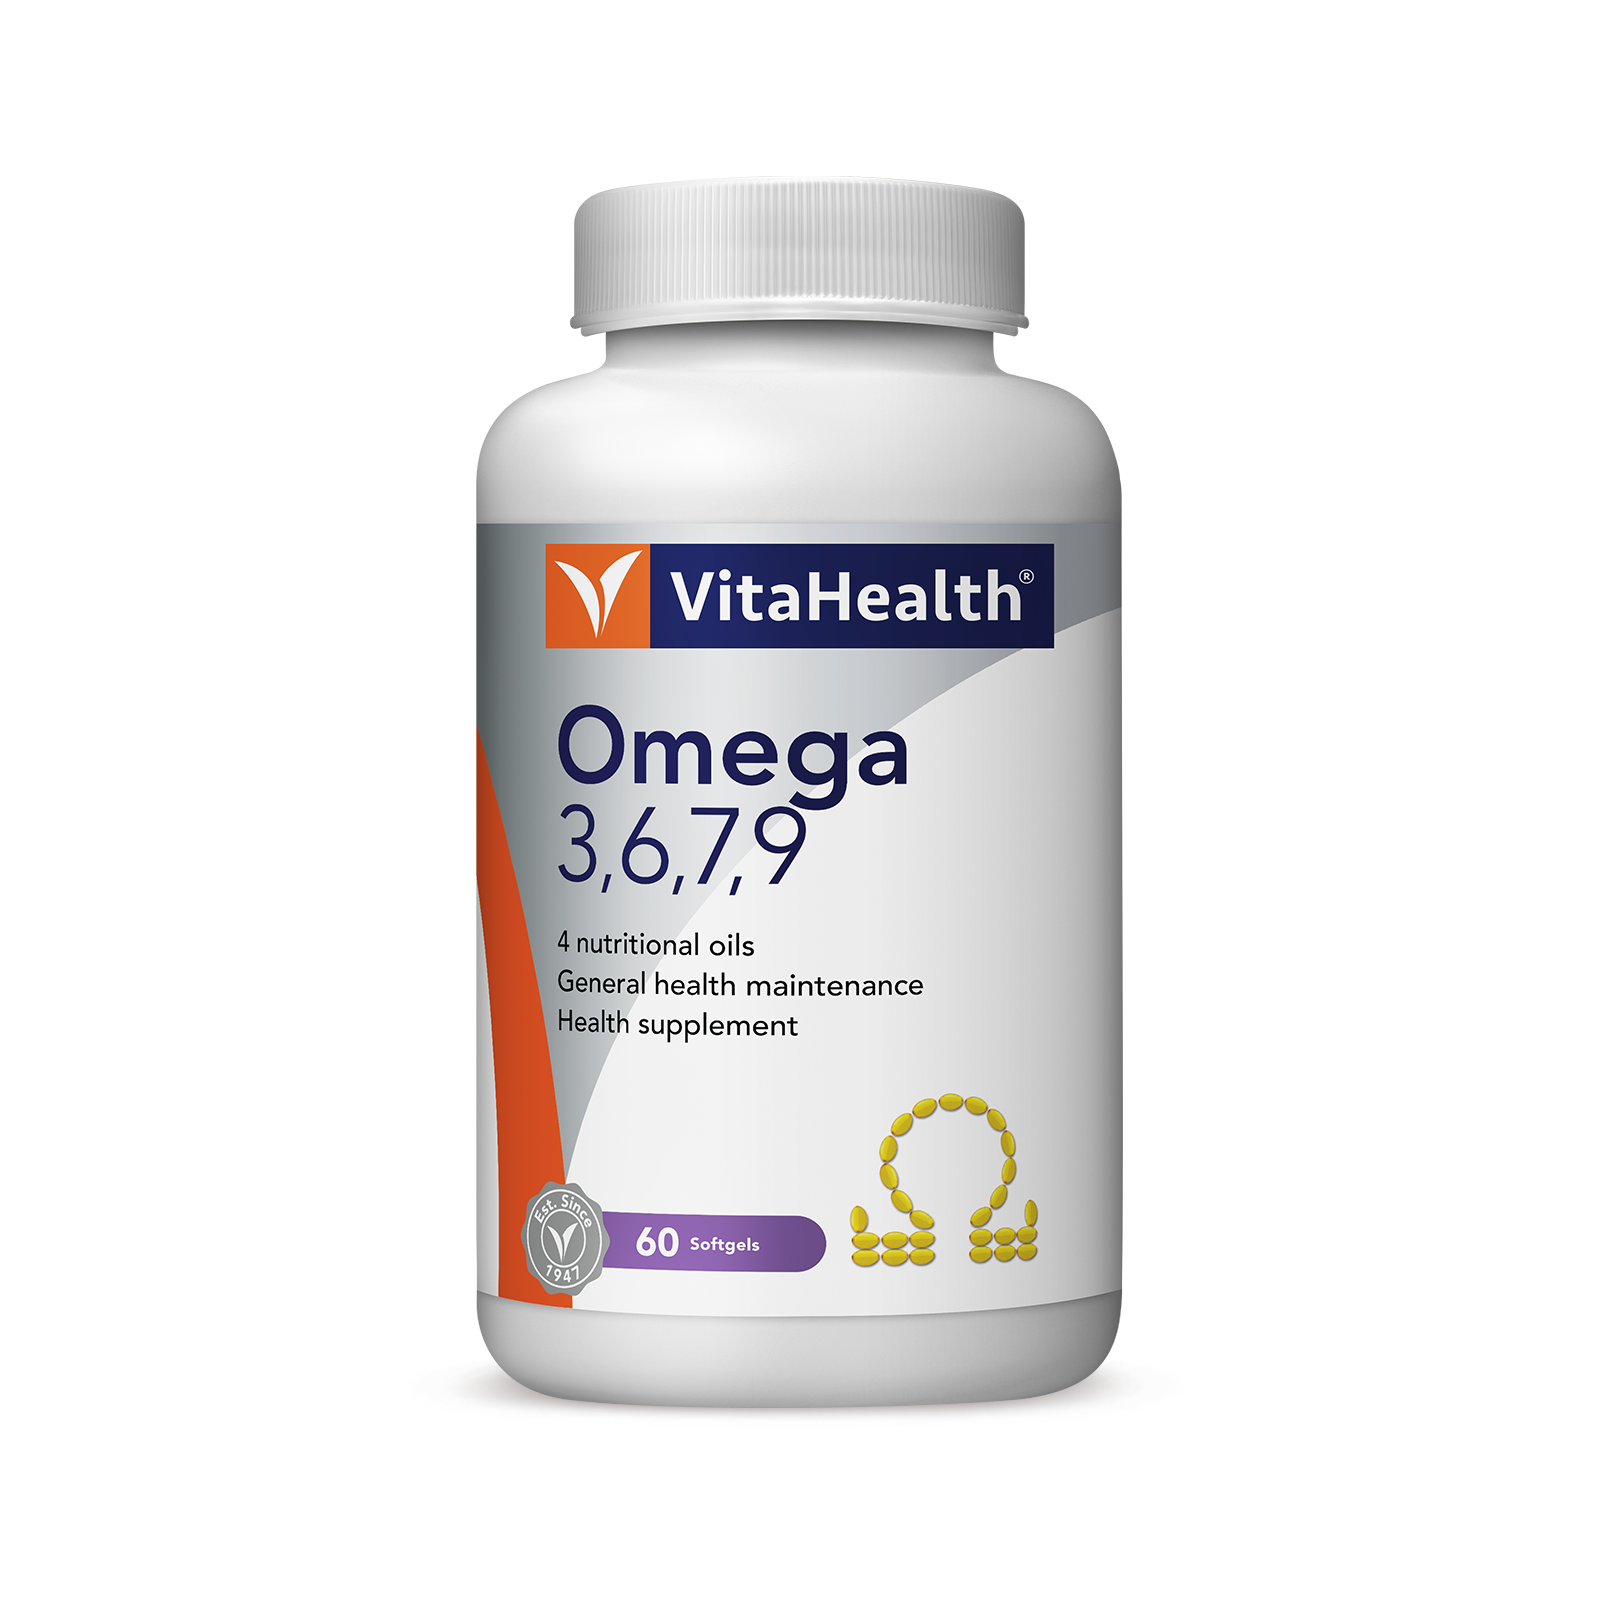 Vitahealth Omega 3,6,7,9 60'S